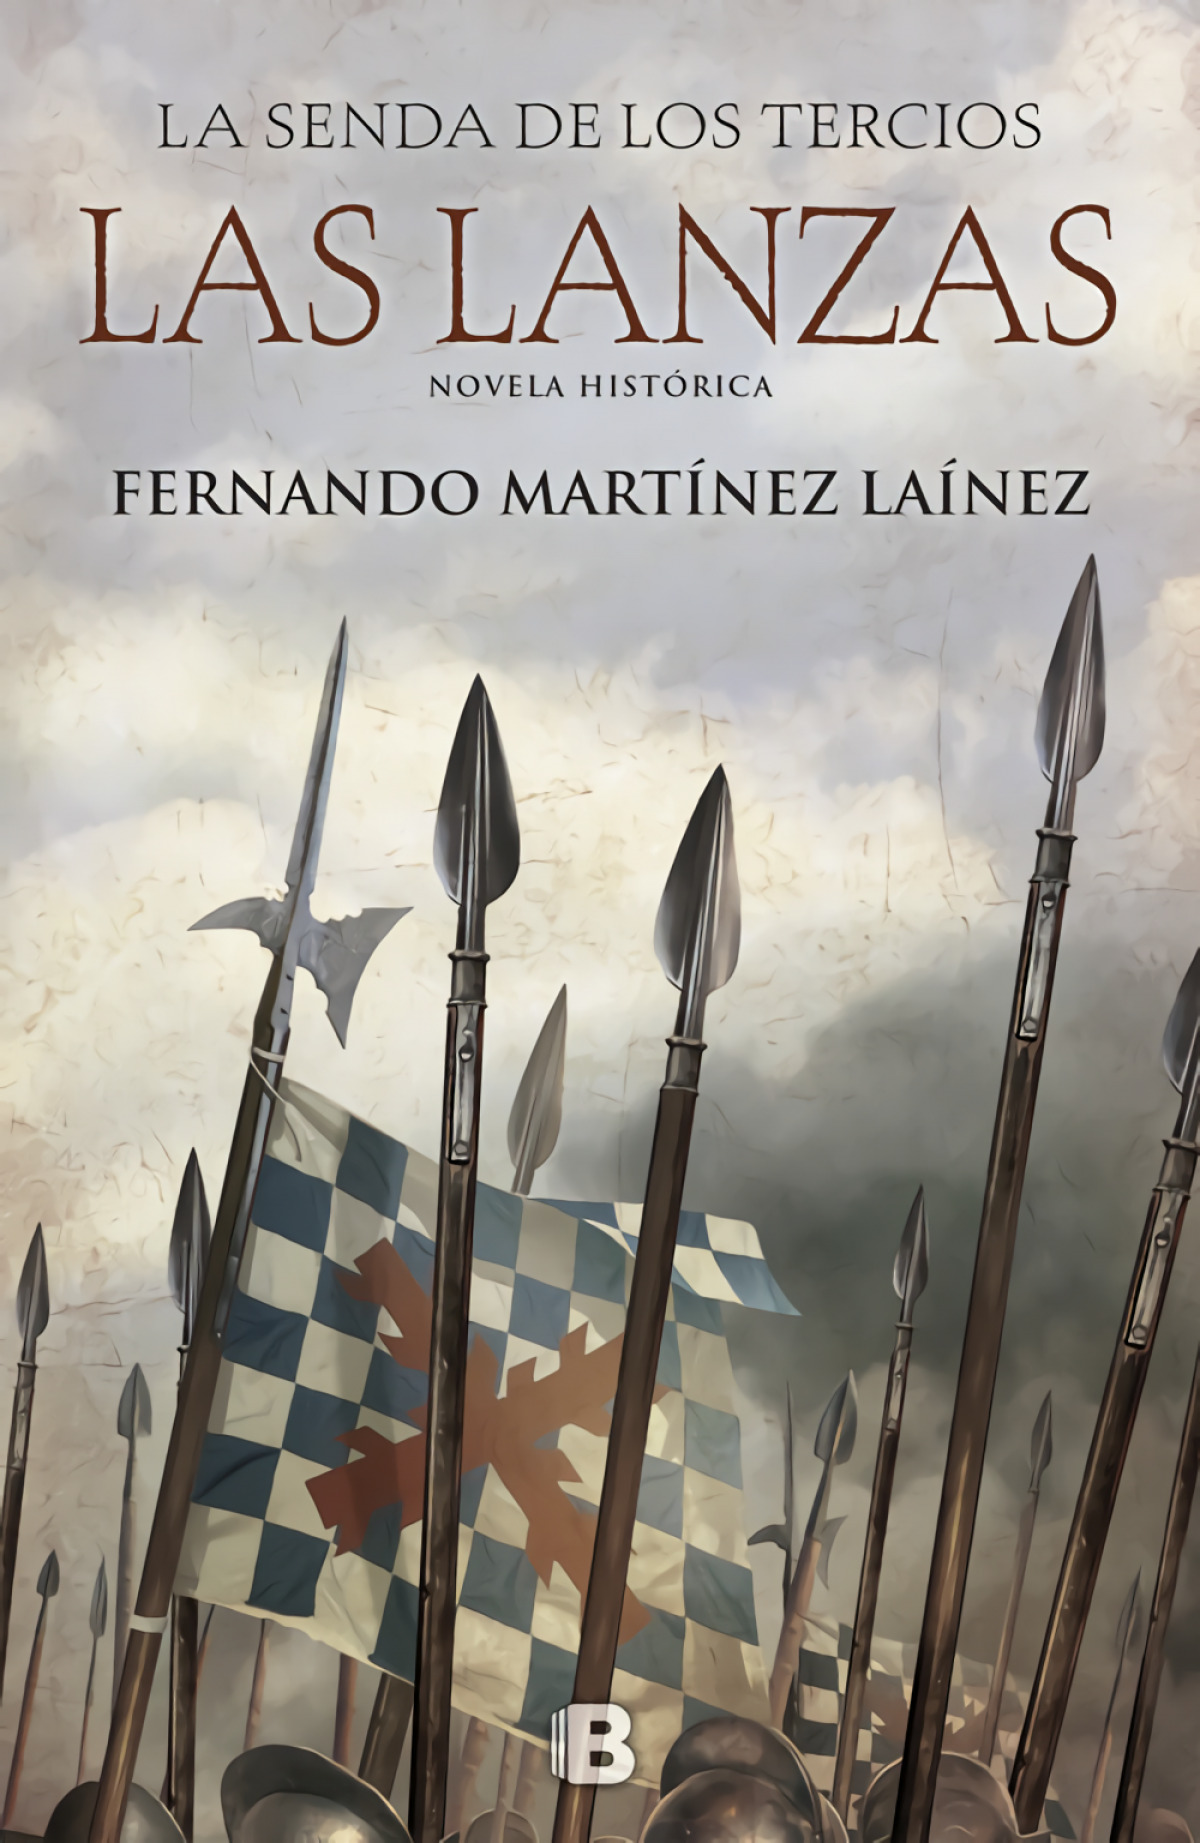 LA SENDA DE LOS TERCIOS Las lanzas - Martínez Lainez, Fernando